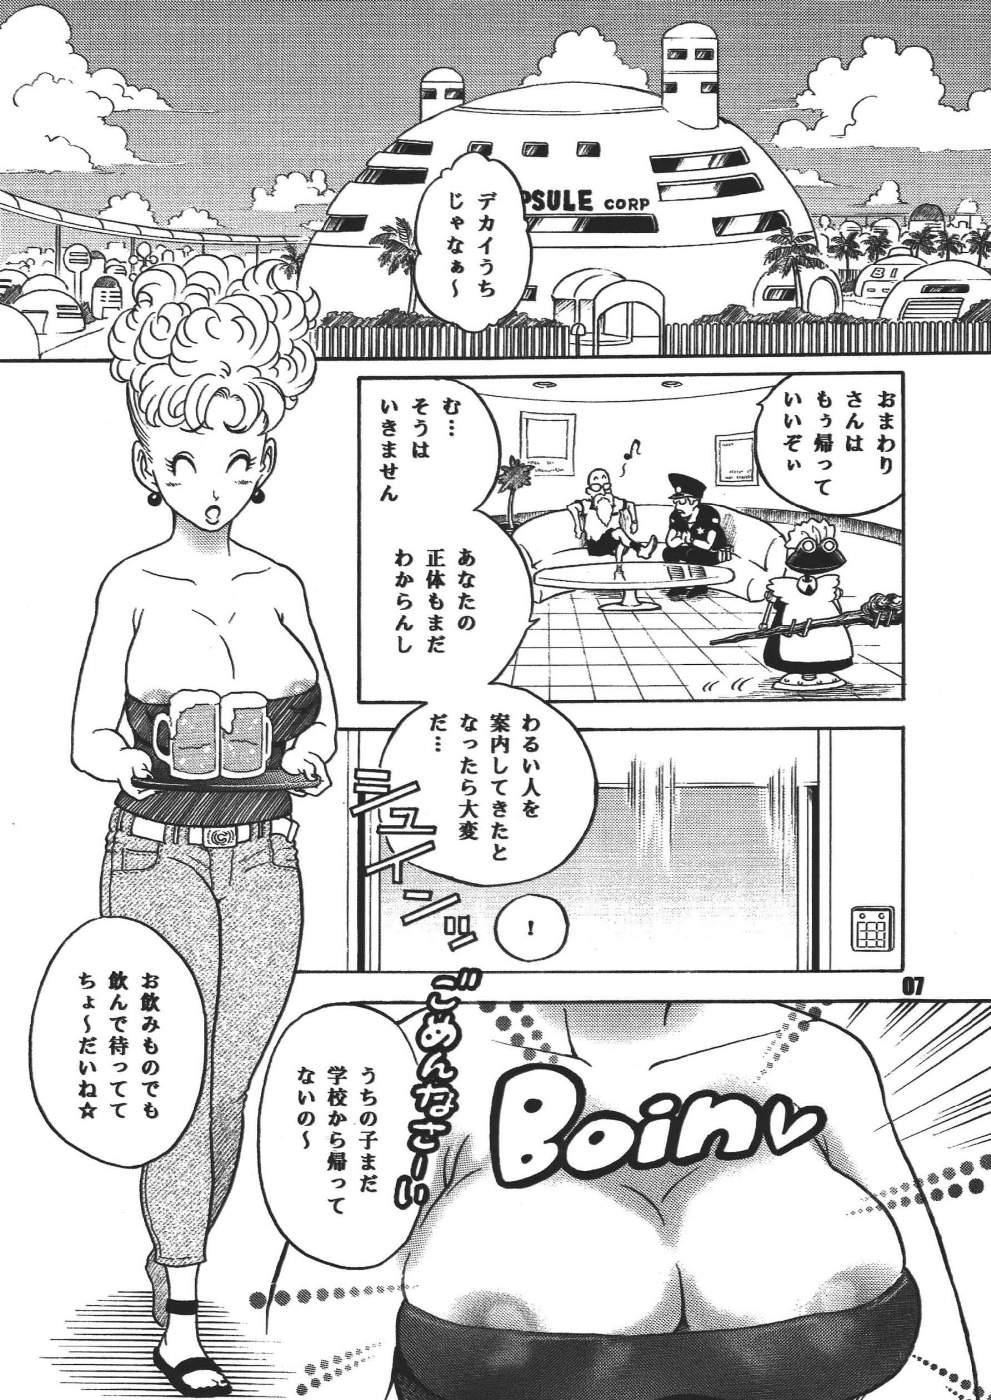 Prima Dangan Ball Maki no Ichi - Nishi no Miyako no Harenchi Jiken - Dragon ball Class Room - Page 7